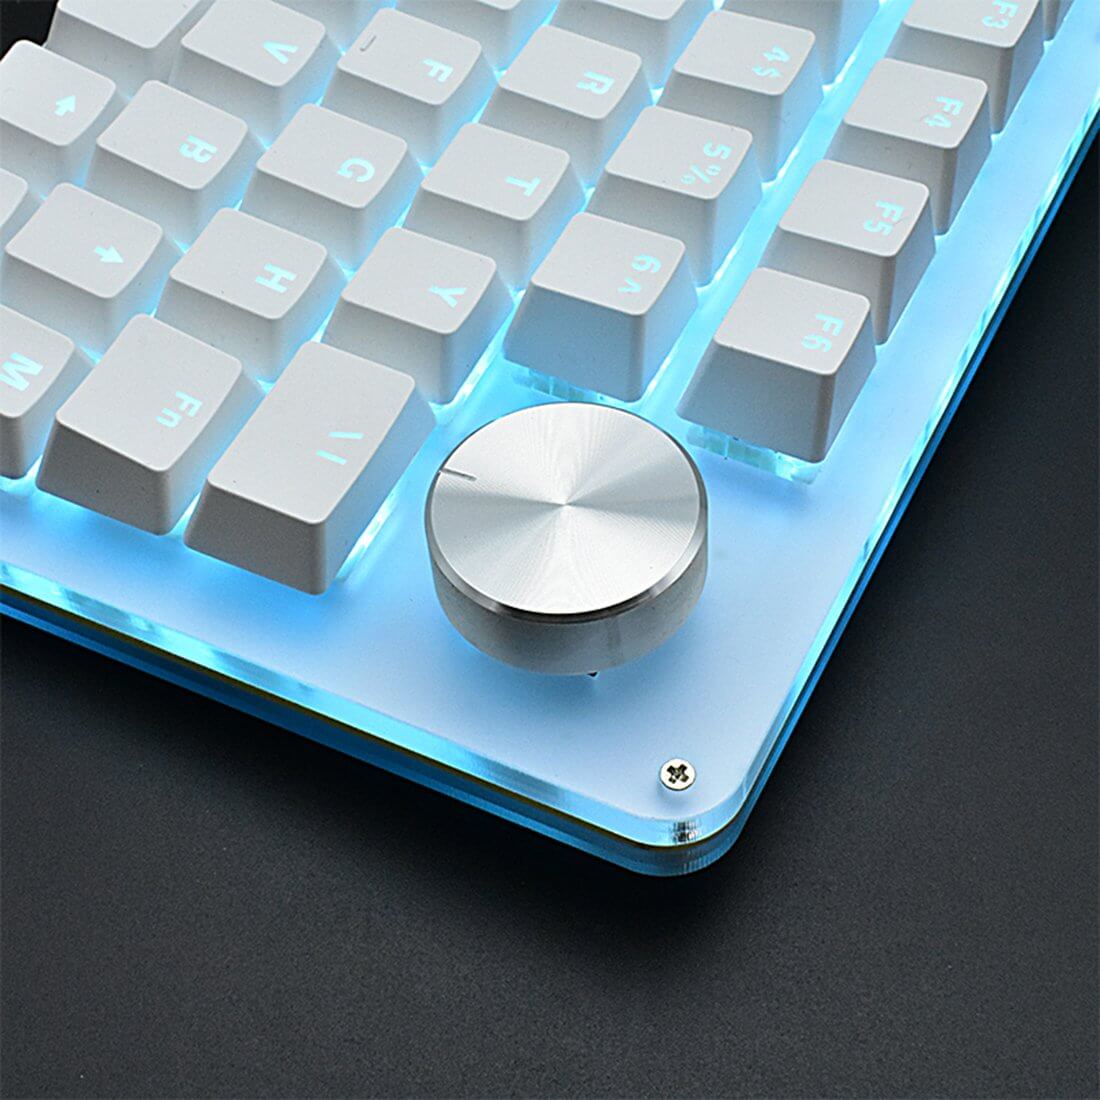 macro keyboard knob